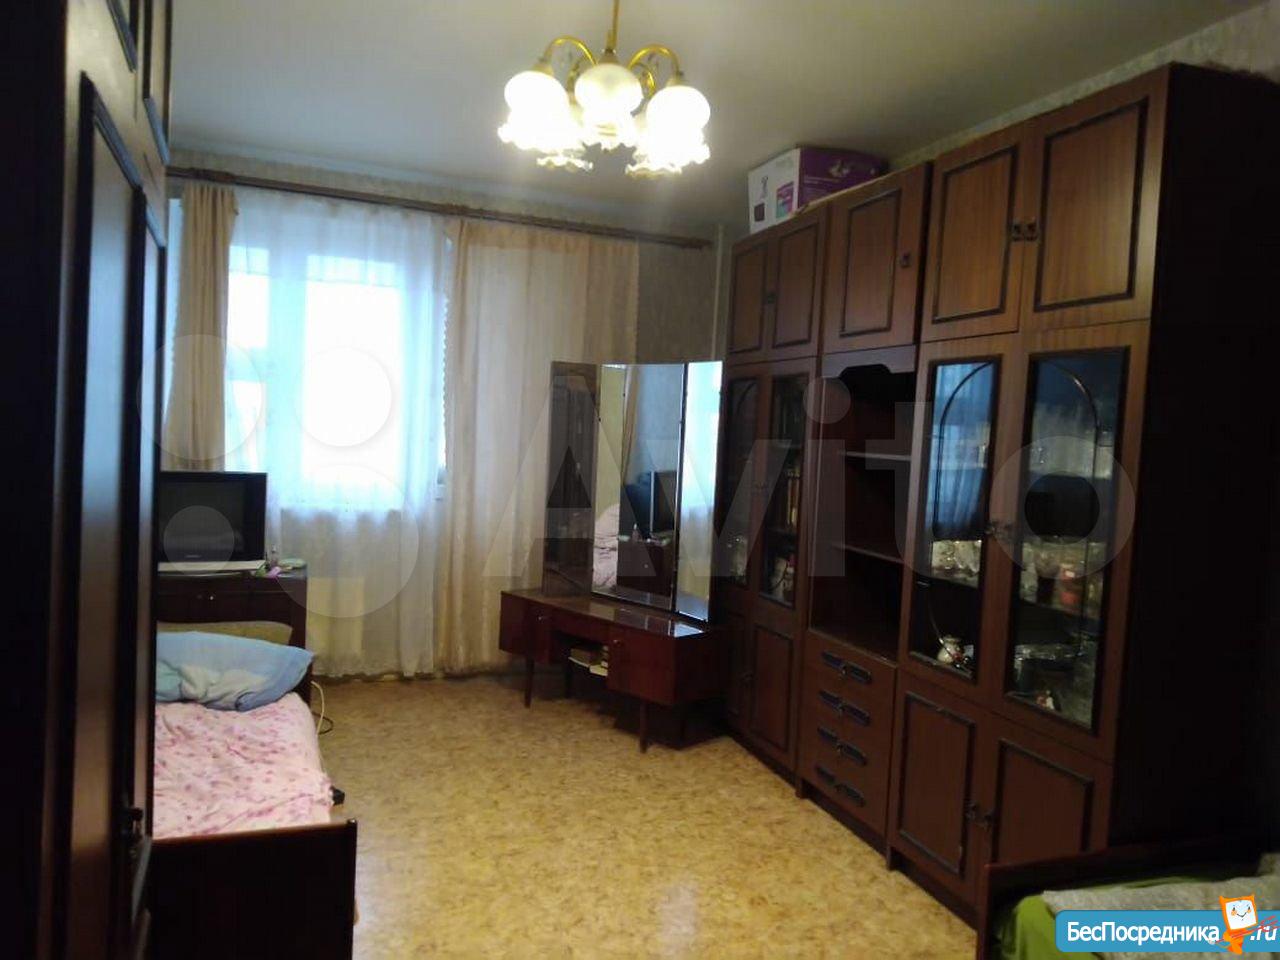 Купить квартиру в Бутово Лазарева д 35